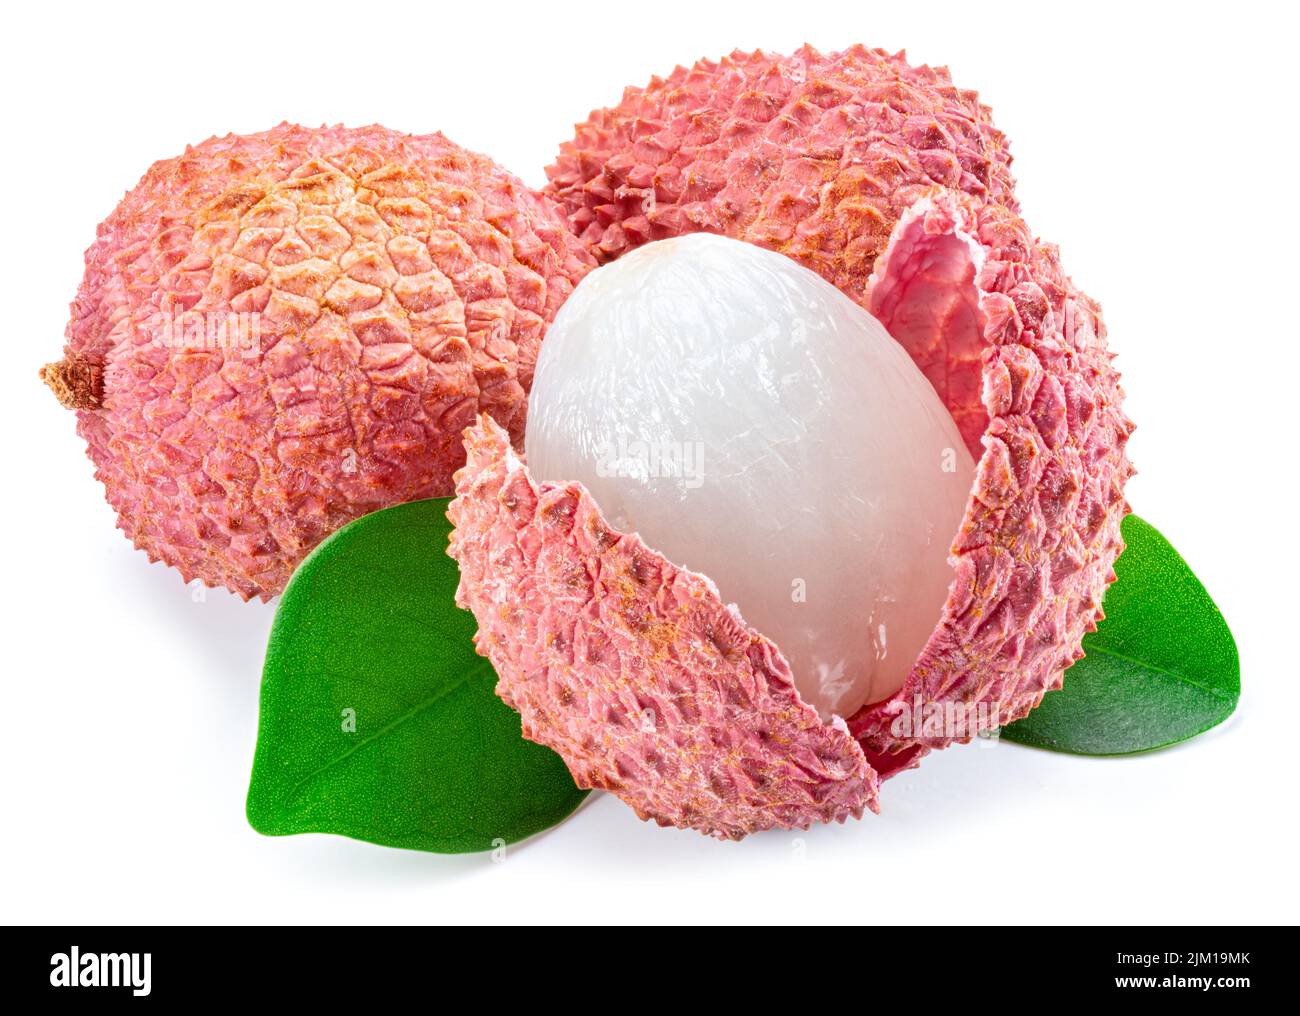 Whole and opened lychee fruit isolated on white background. Stock Photo